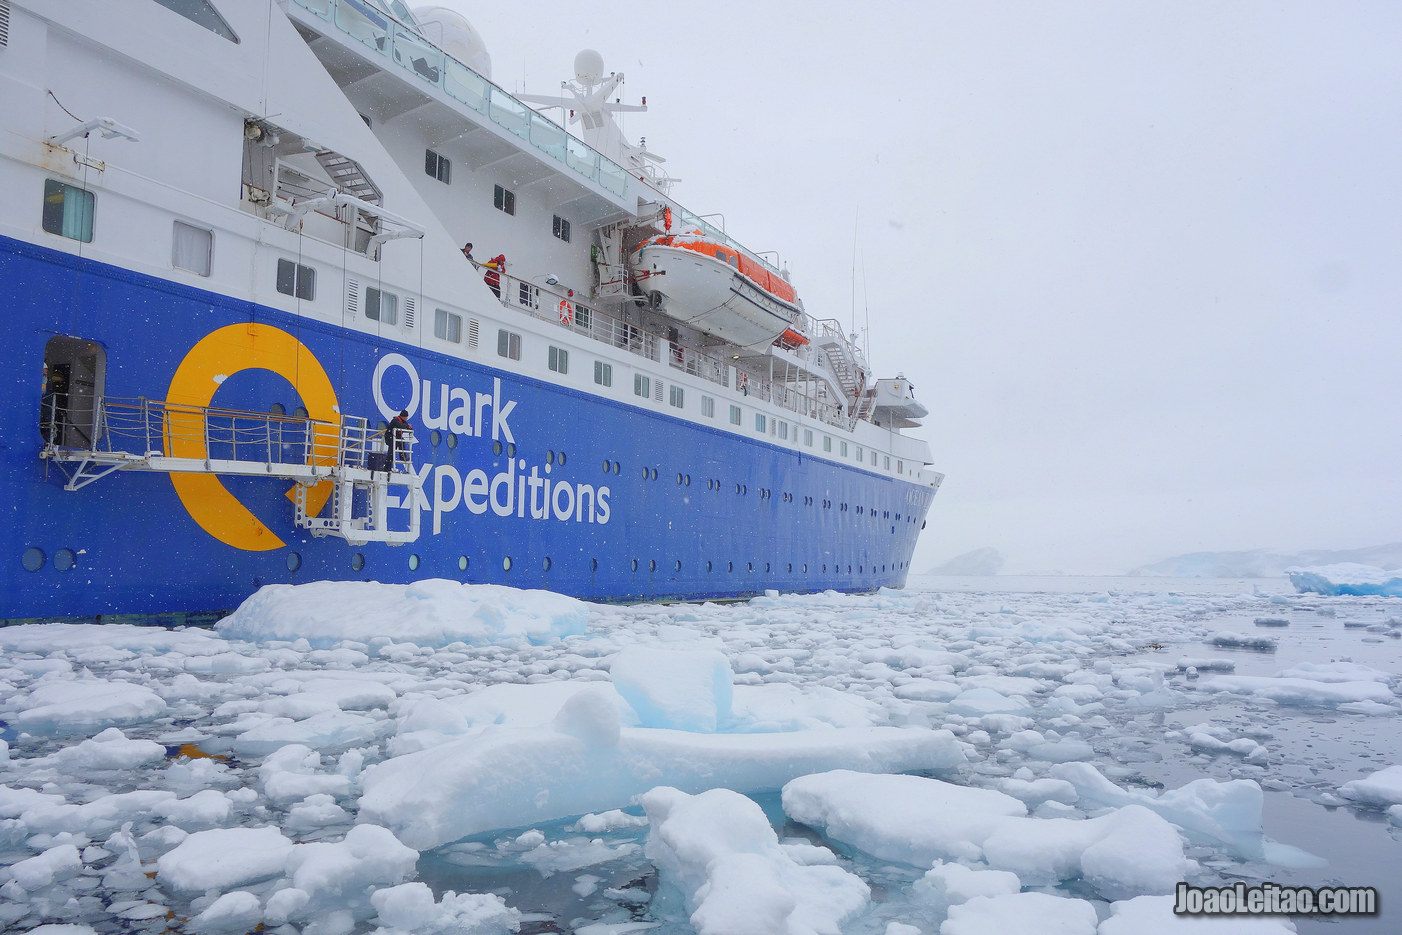 Ocean Diamond Antarctica cruise ship